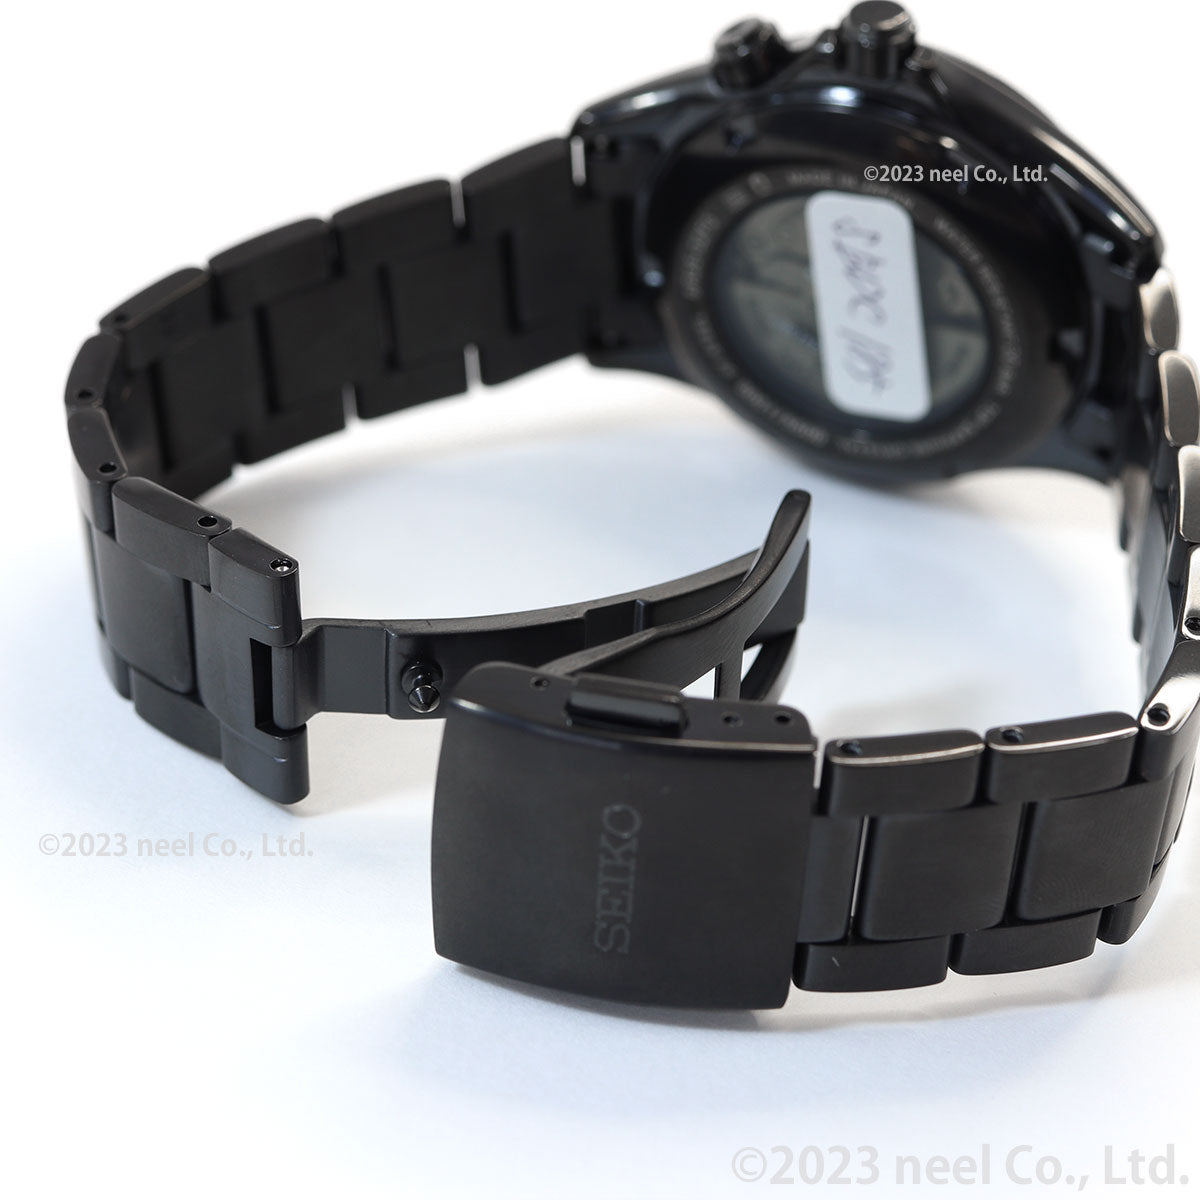 セイコー プロスペックス SEIKO PROSPEX SBDC185 アルピニスト メカニカル 自動巻き コアショップ限定 腕時計 メンズ The Black Series Limited Edition